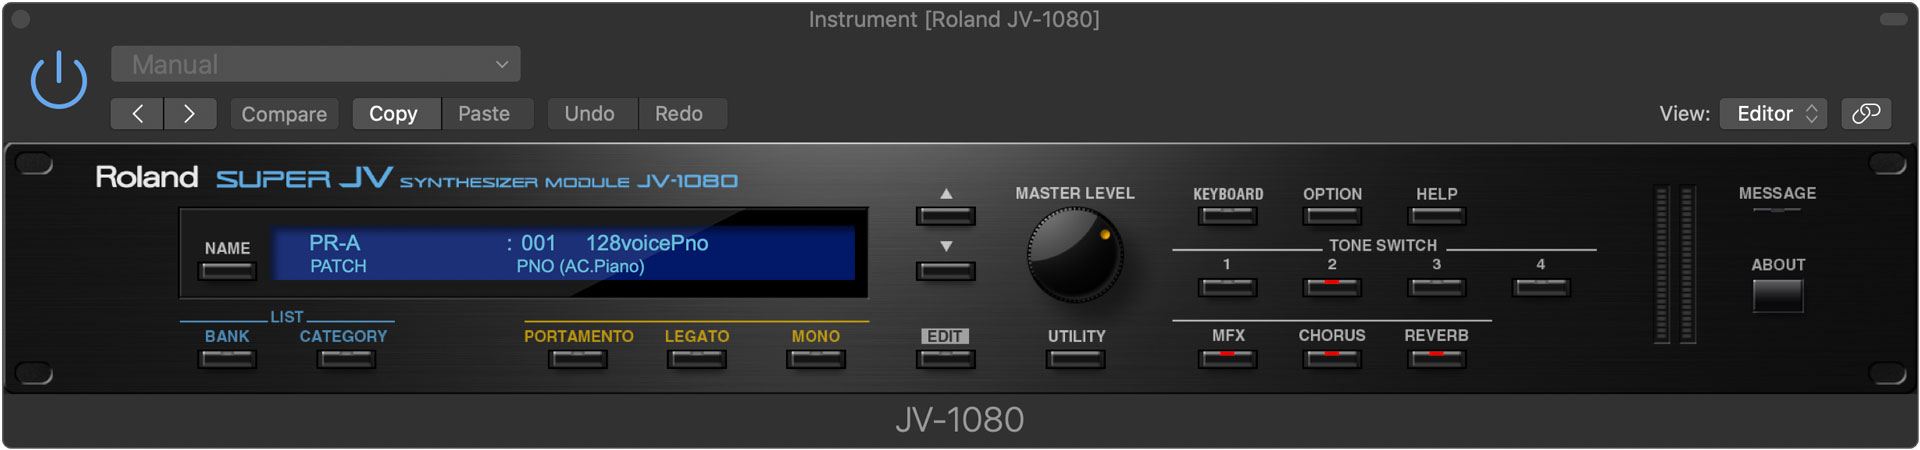 Roland JV-1080 in Roland Cloud.